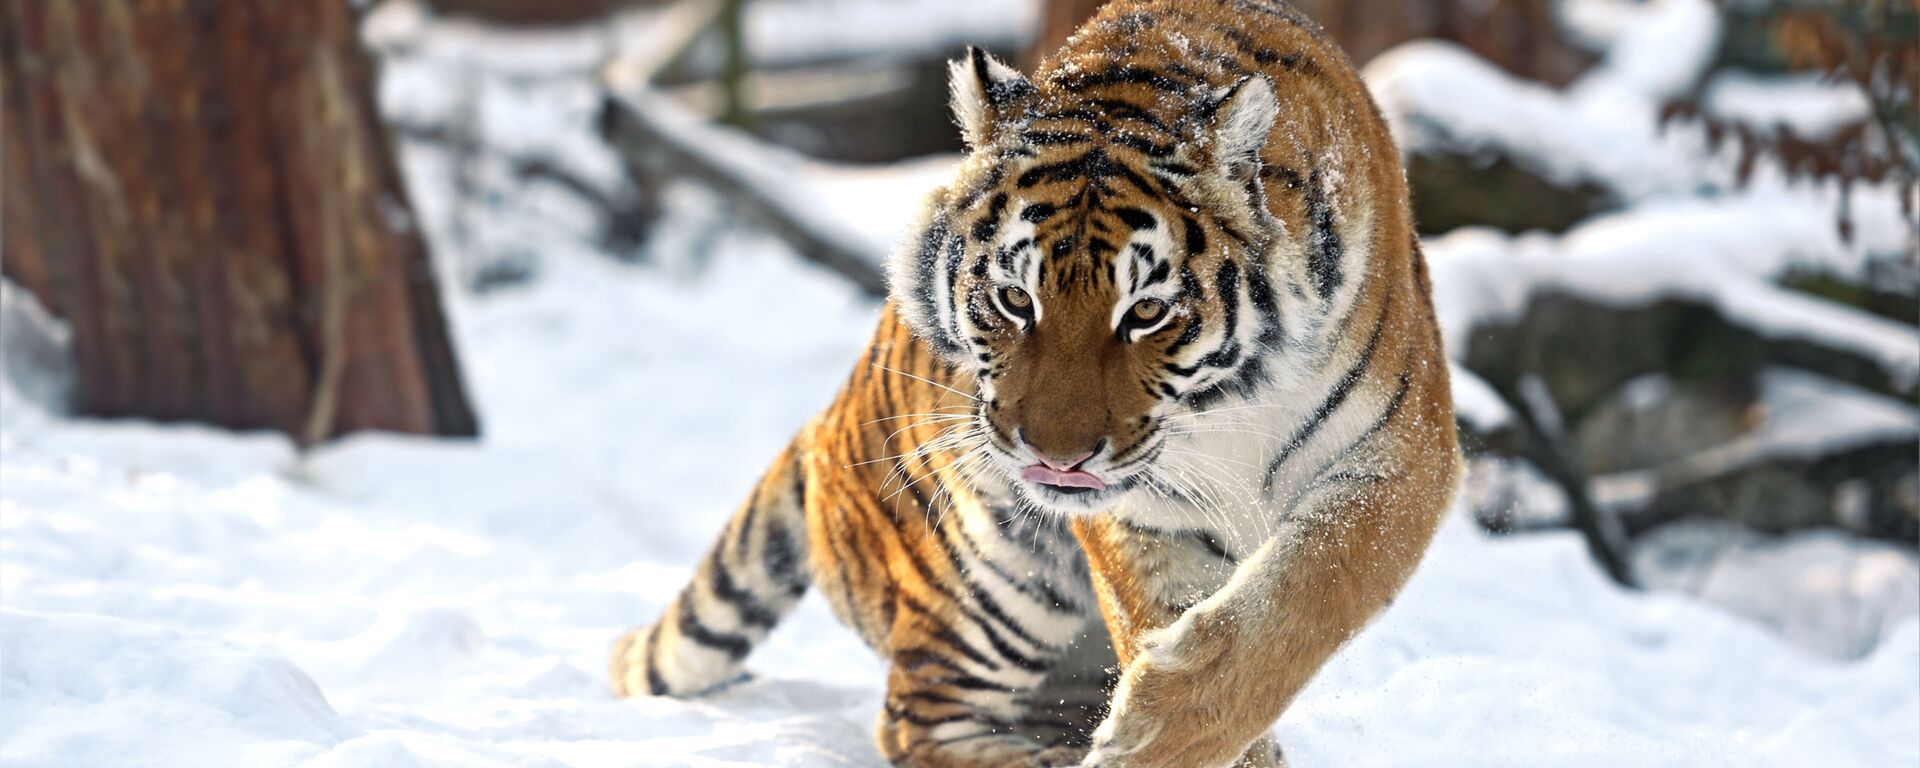 Амурский тигр зимой - Sputnik Таджикистан, 1920, 21.10.2021